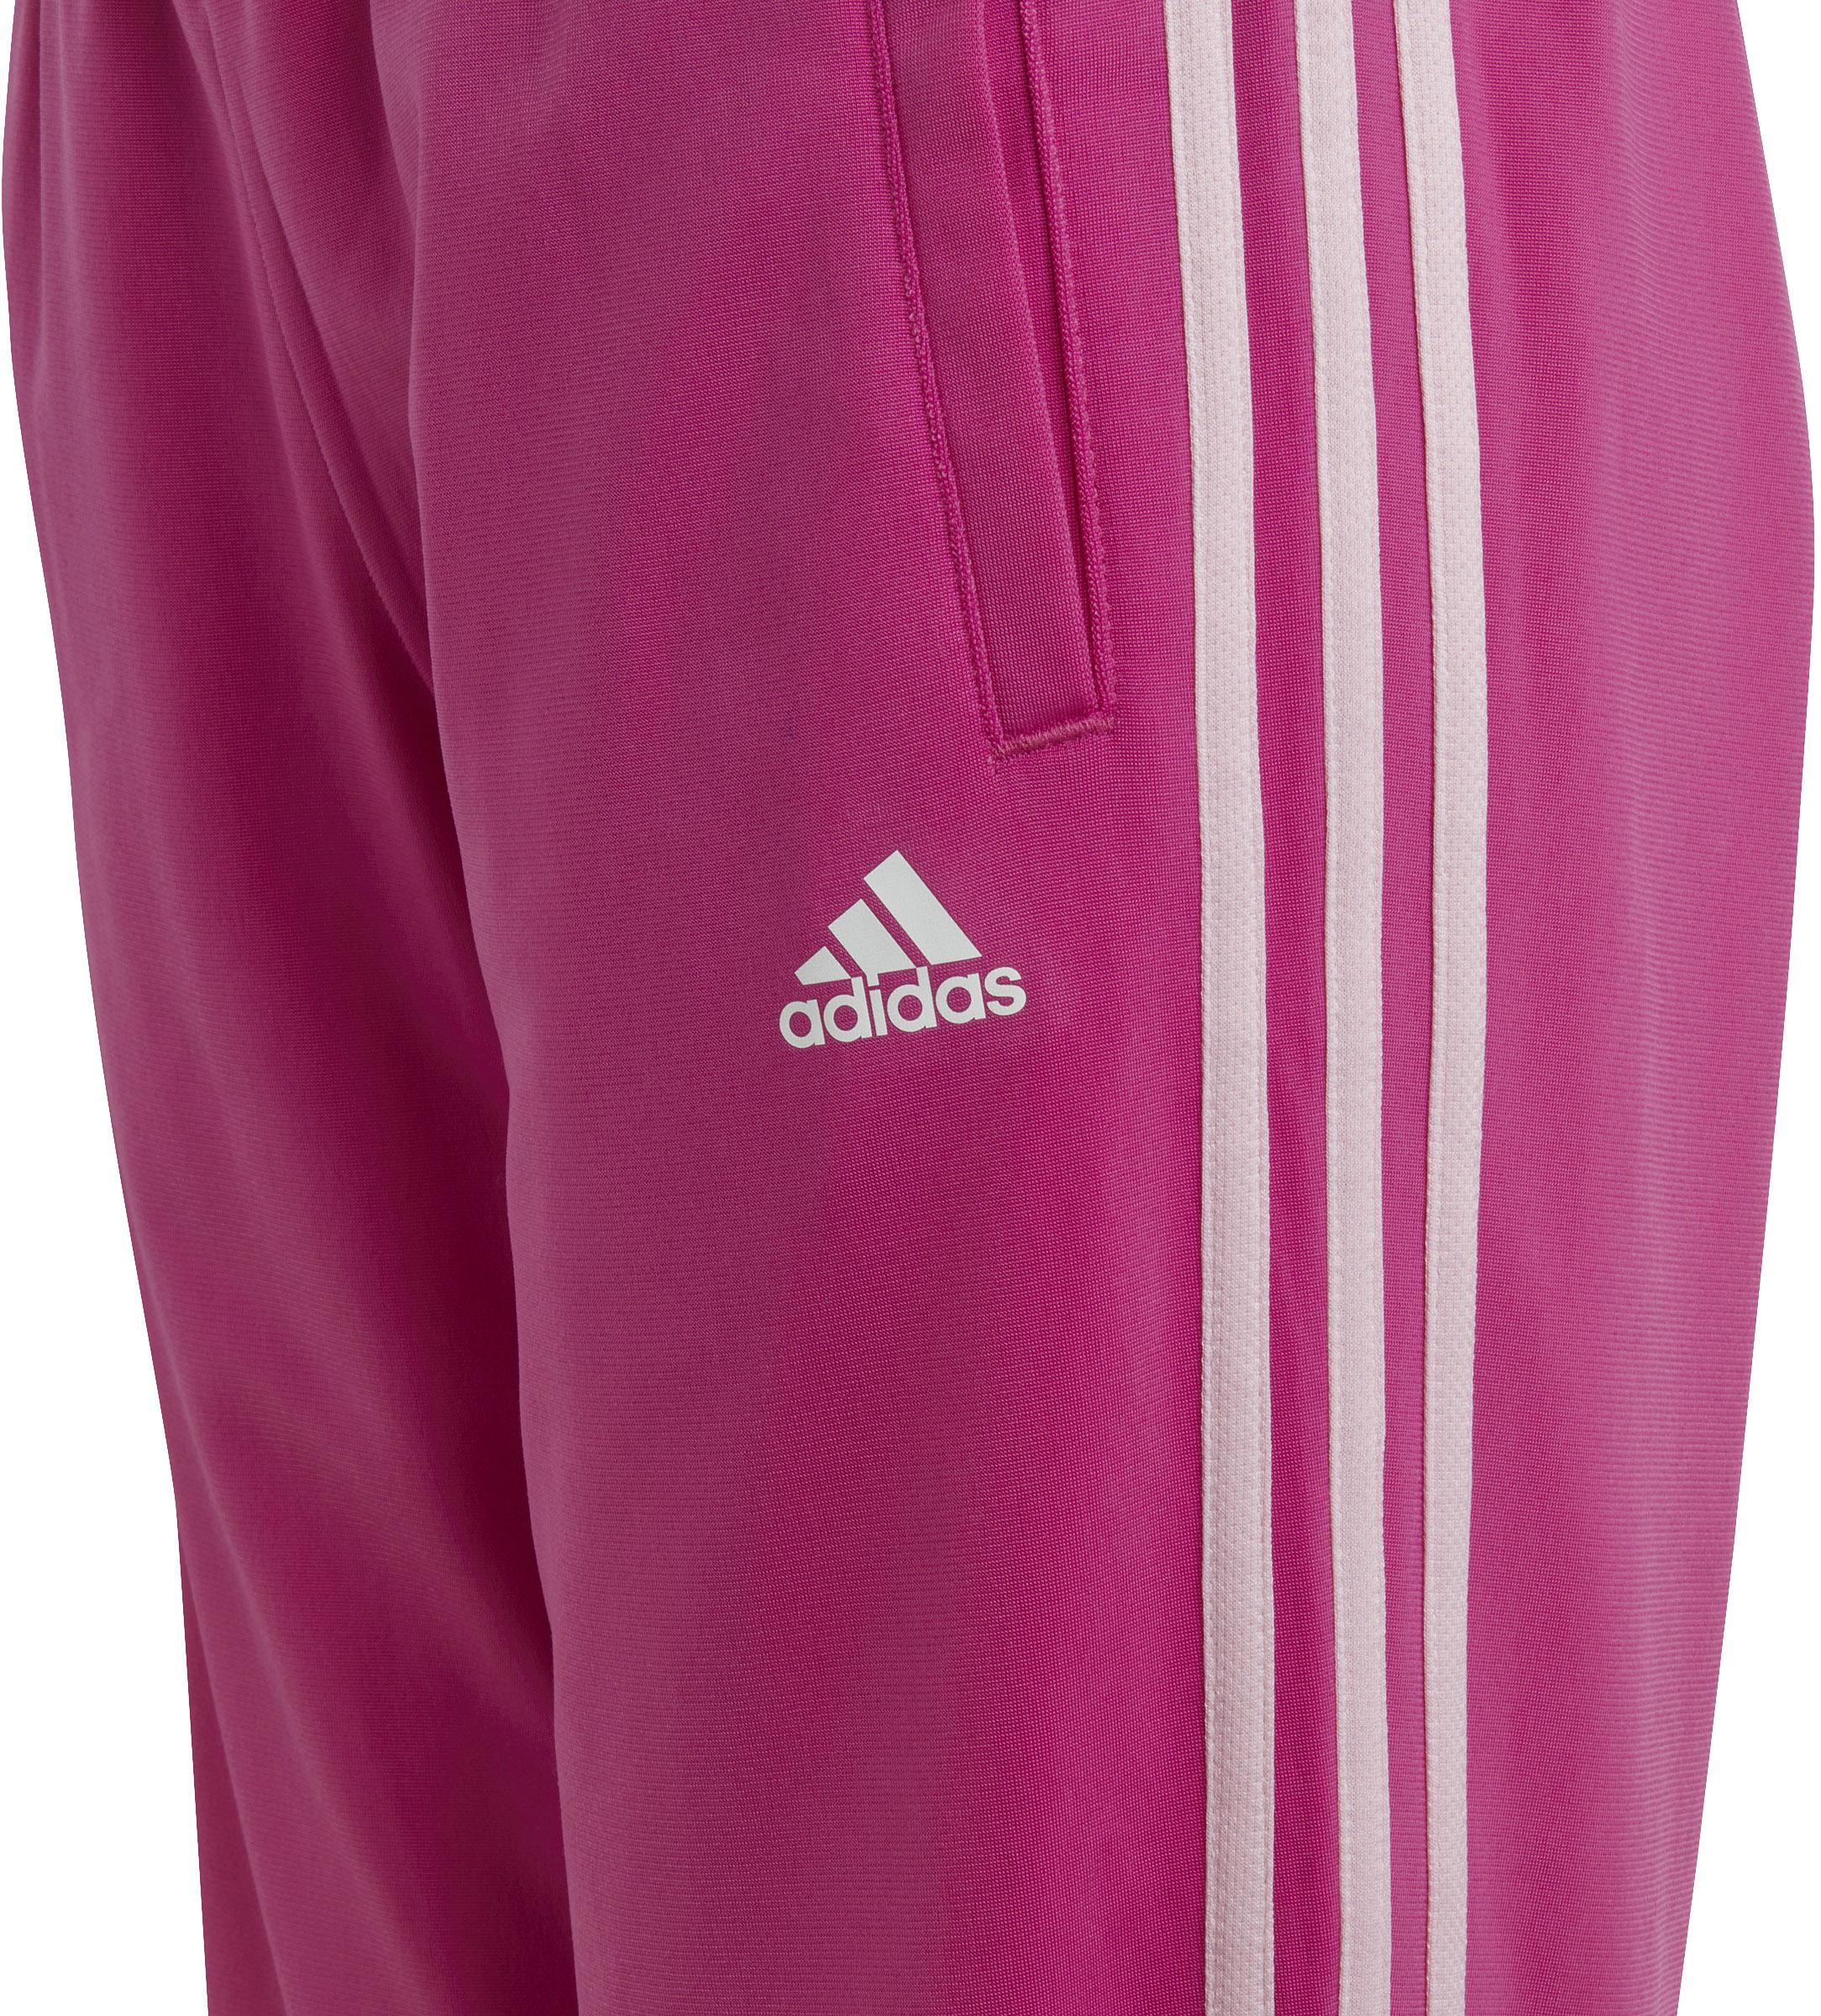 von SportScheck Online lucid clear kaufen fuchsia-white im Trainingsanzug Mädchen Adidas pink-semi Shop